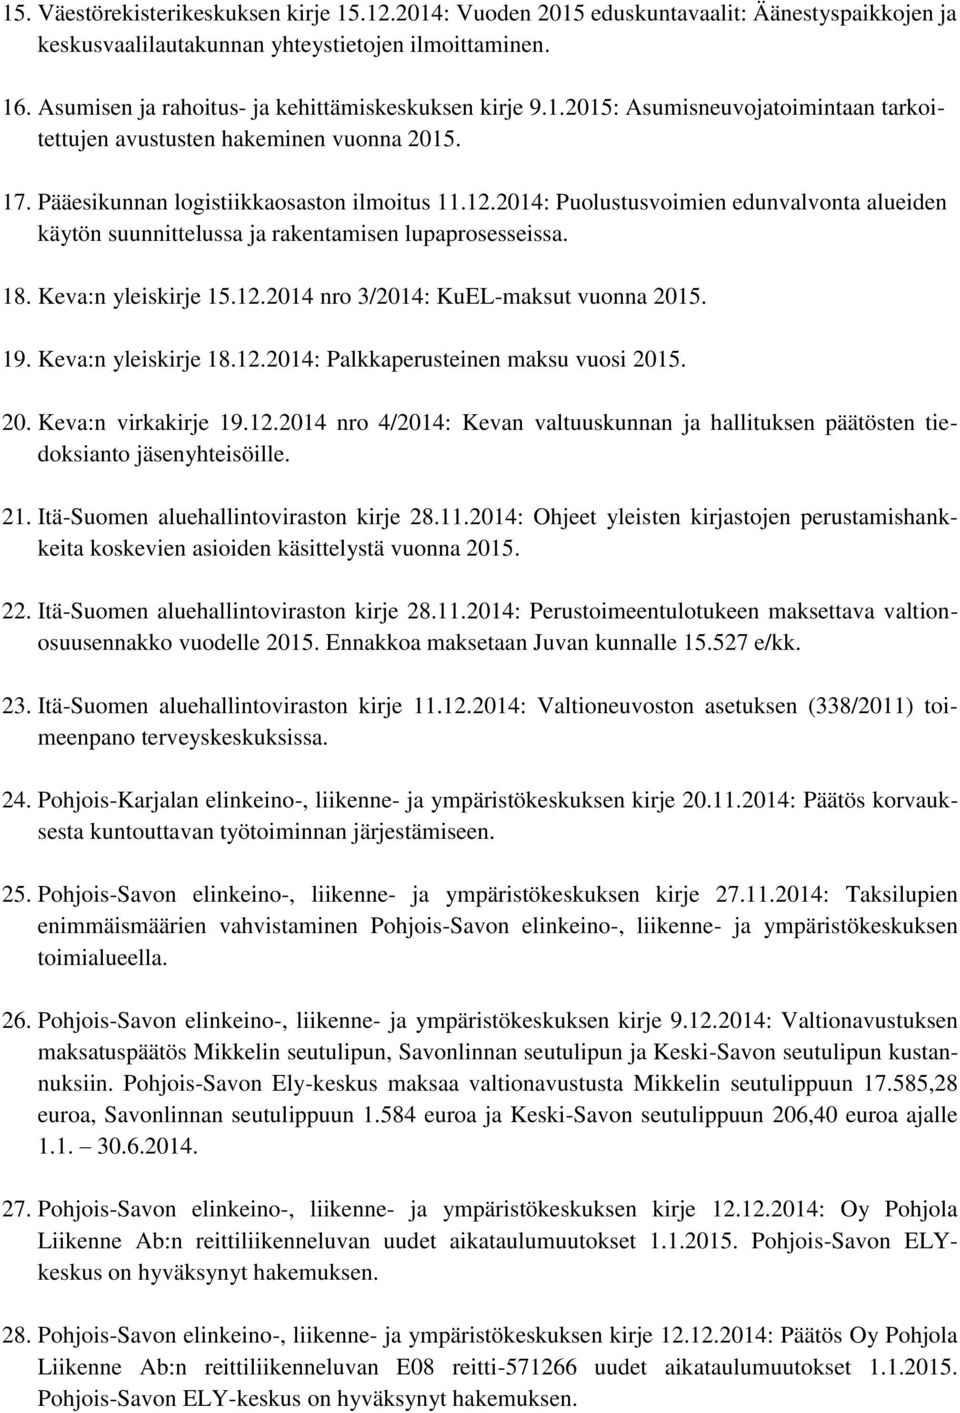 2014: Puolustusvoimien edunvalvonta alueiden käytön suunnittelussa ja rakentamisen lupaprosesseissa. 18. Keva:n yleiskirje 15.12.2014 nro 3/2014: KuEL-maksut vuonna 2015. 19. Keva:n yleiskirje 18.12.2014: Palkkaperusteinen maksu vuosi 2015.